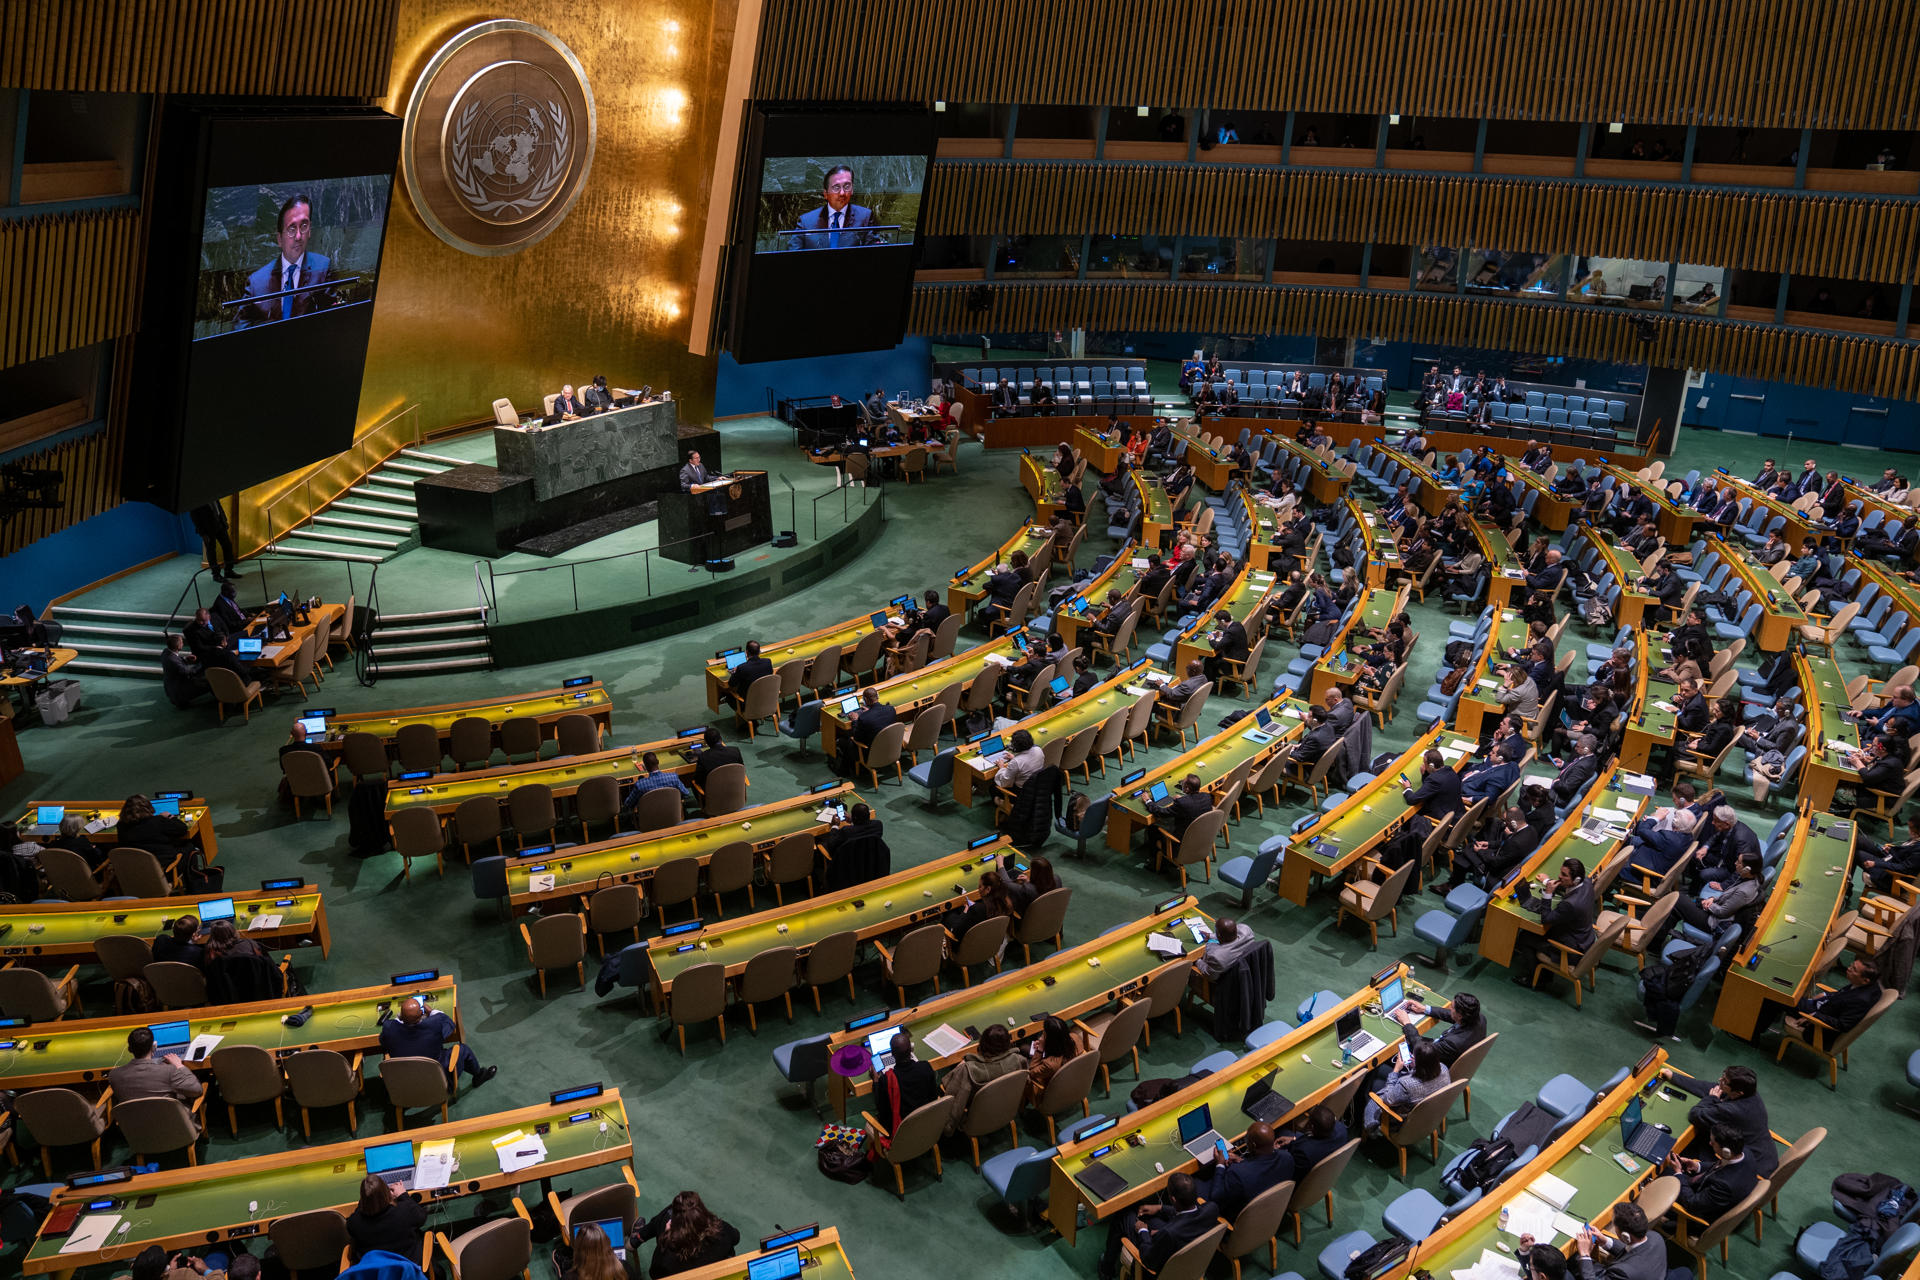 “No deberíamos hacernos ilusiones sobre las Naciones Unidas”, lamenta embajador ucraniano